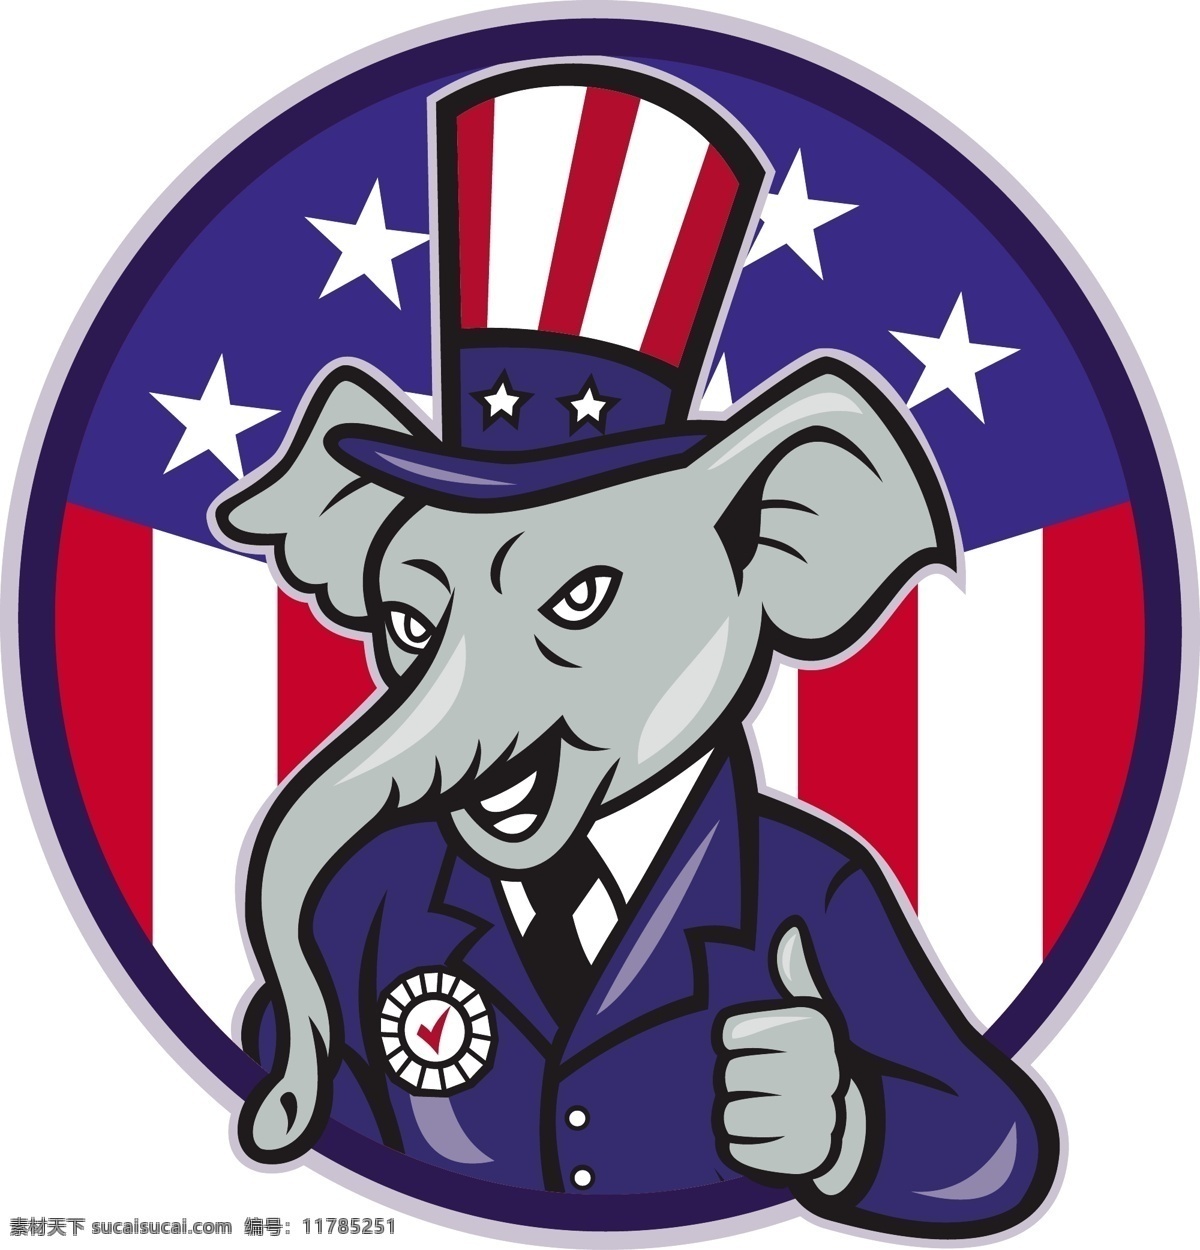 共和党 大象 吉祥物 竖起 美国 国旗 白色